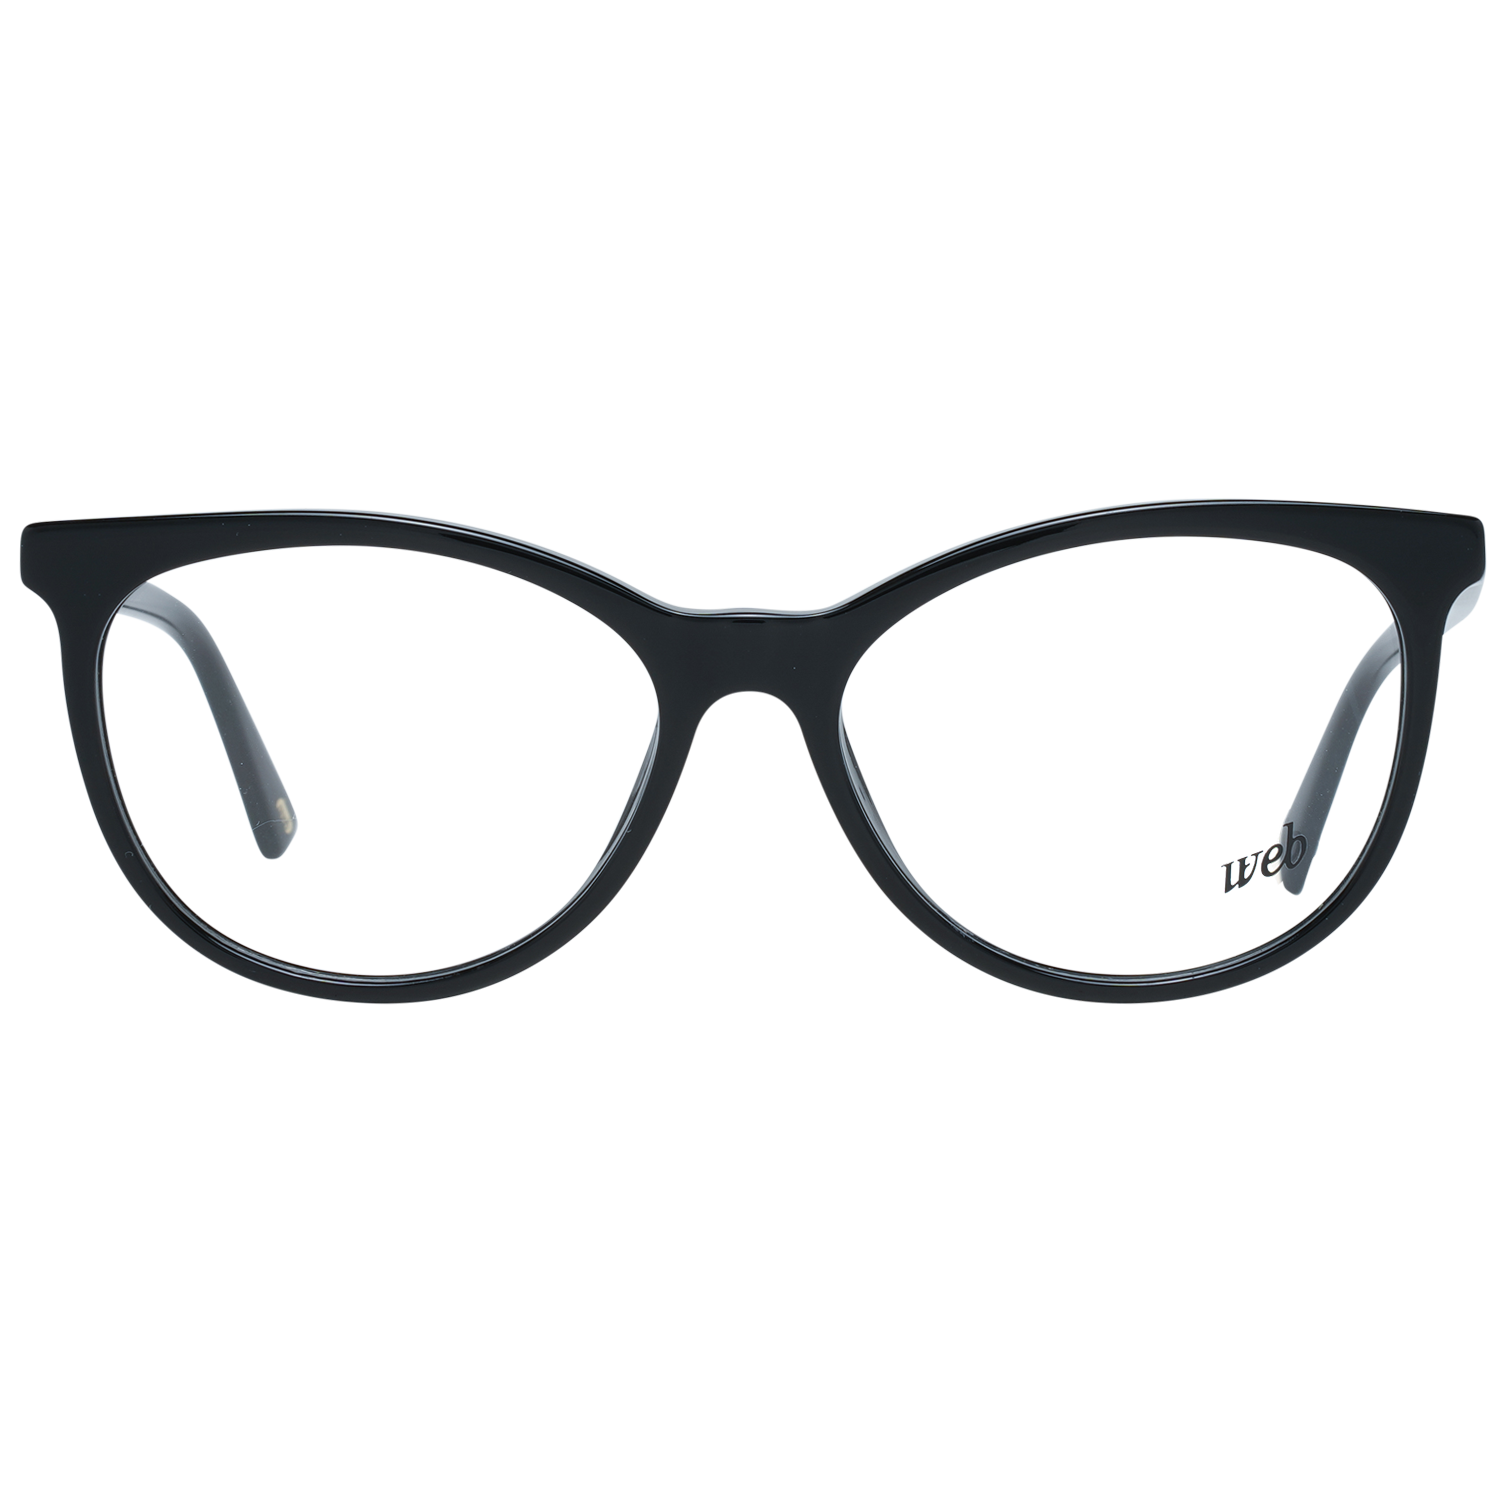 Web Frames Web Optical Frame WE5342 001 53 Eyeglasses Eyewear UK USA Australia 